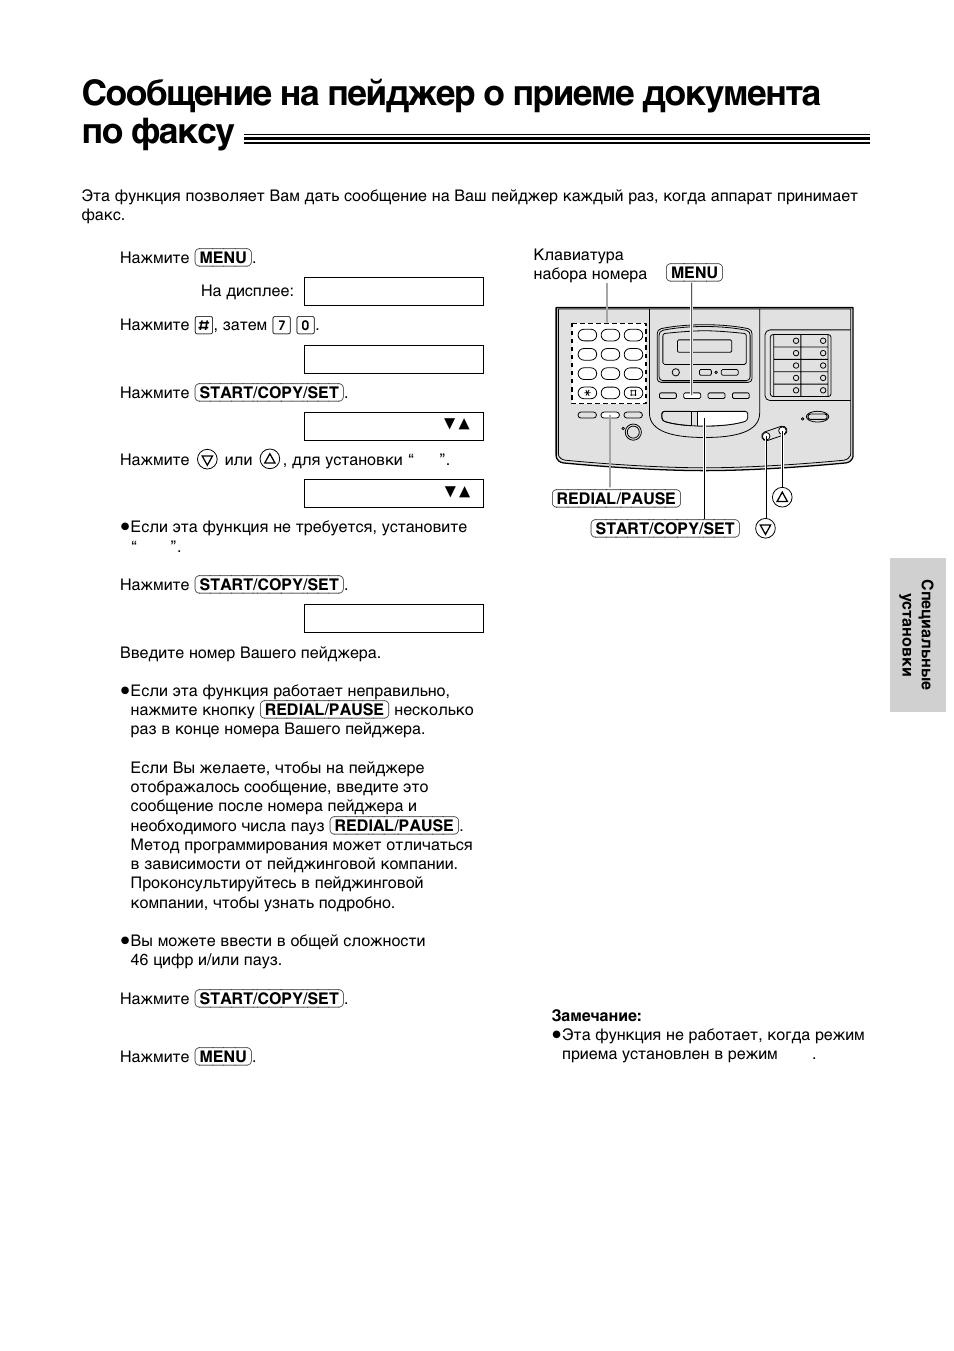 Сообщение на пейджер о приеме документа по факсу | Инструкция по эксплуатации Panasonic KX-F1110RS | Страница 14 / 20